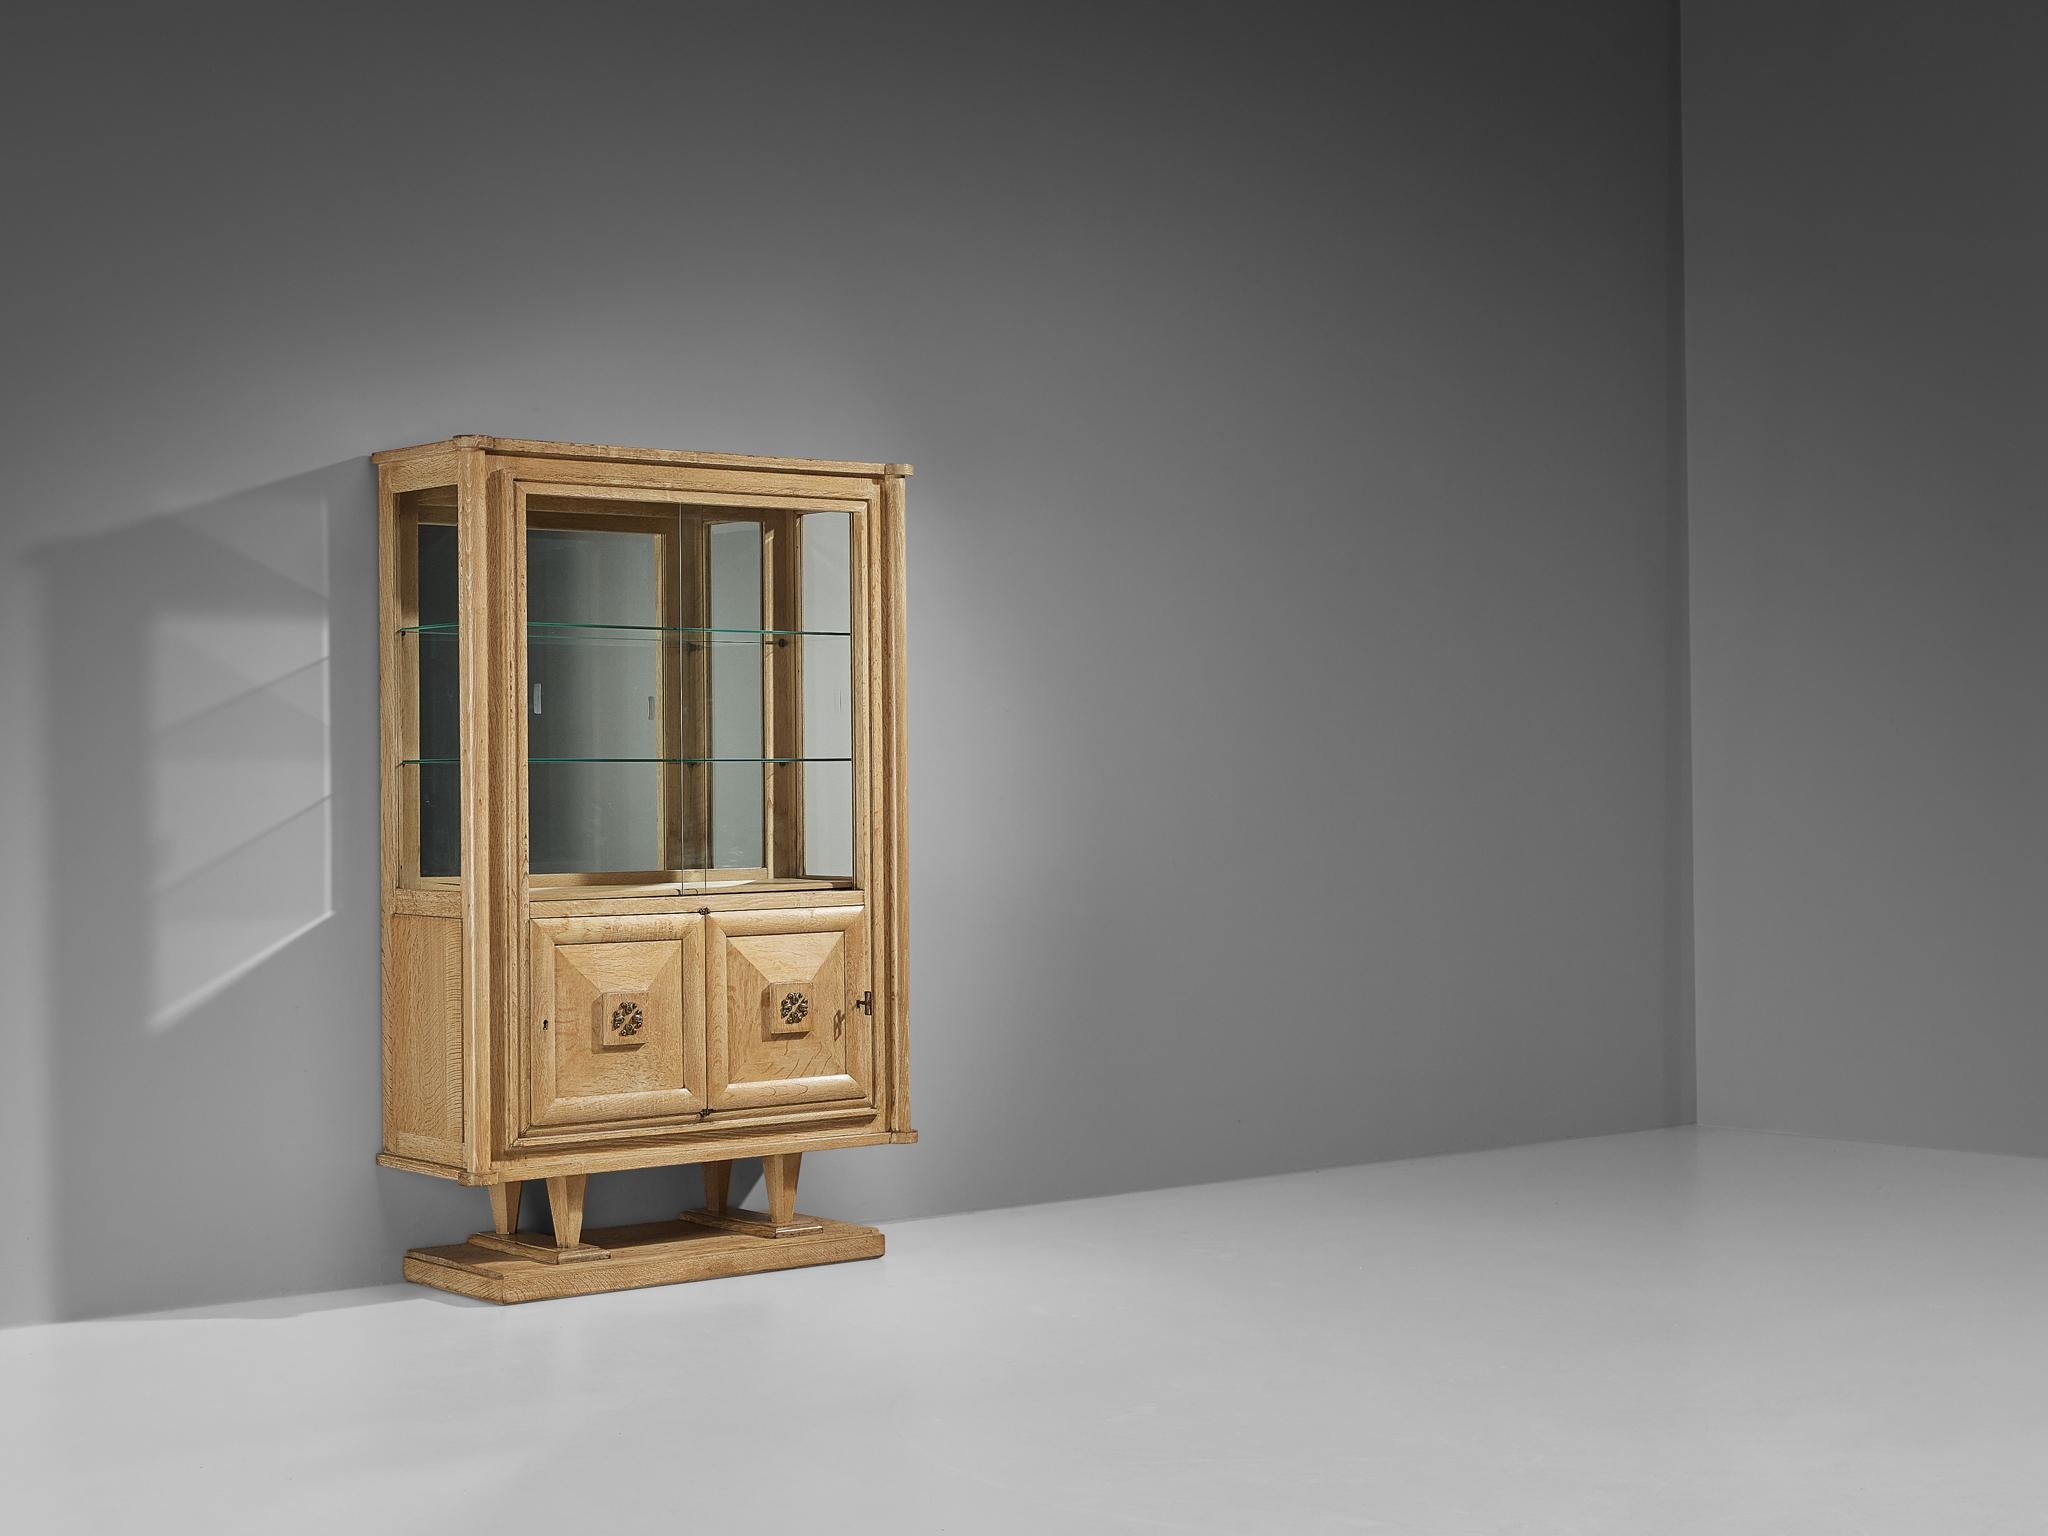 Armoire Gaston Poisson, chêne, verre, laiton, France, années 1940

Joli meuble en chêne et verre. La partie haute du rangement se compose d'une partie vitrine, avec deux étagères en verre et un dos en miroir. La partie inférieure est un meuble à